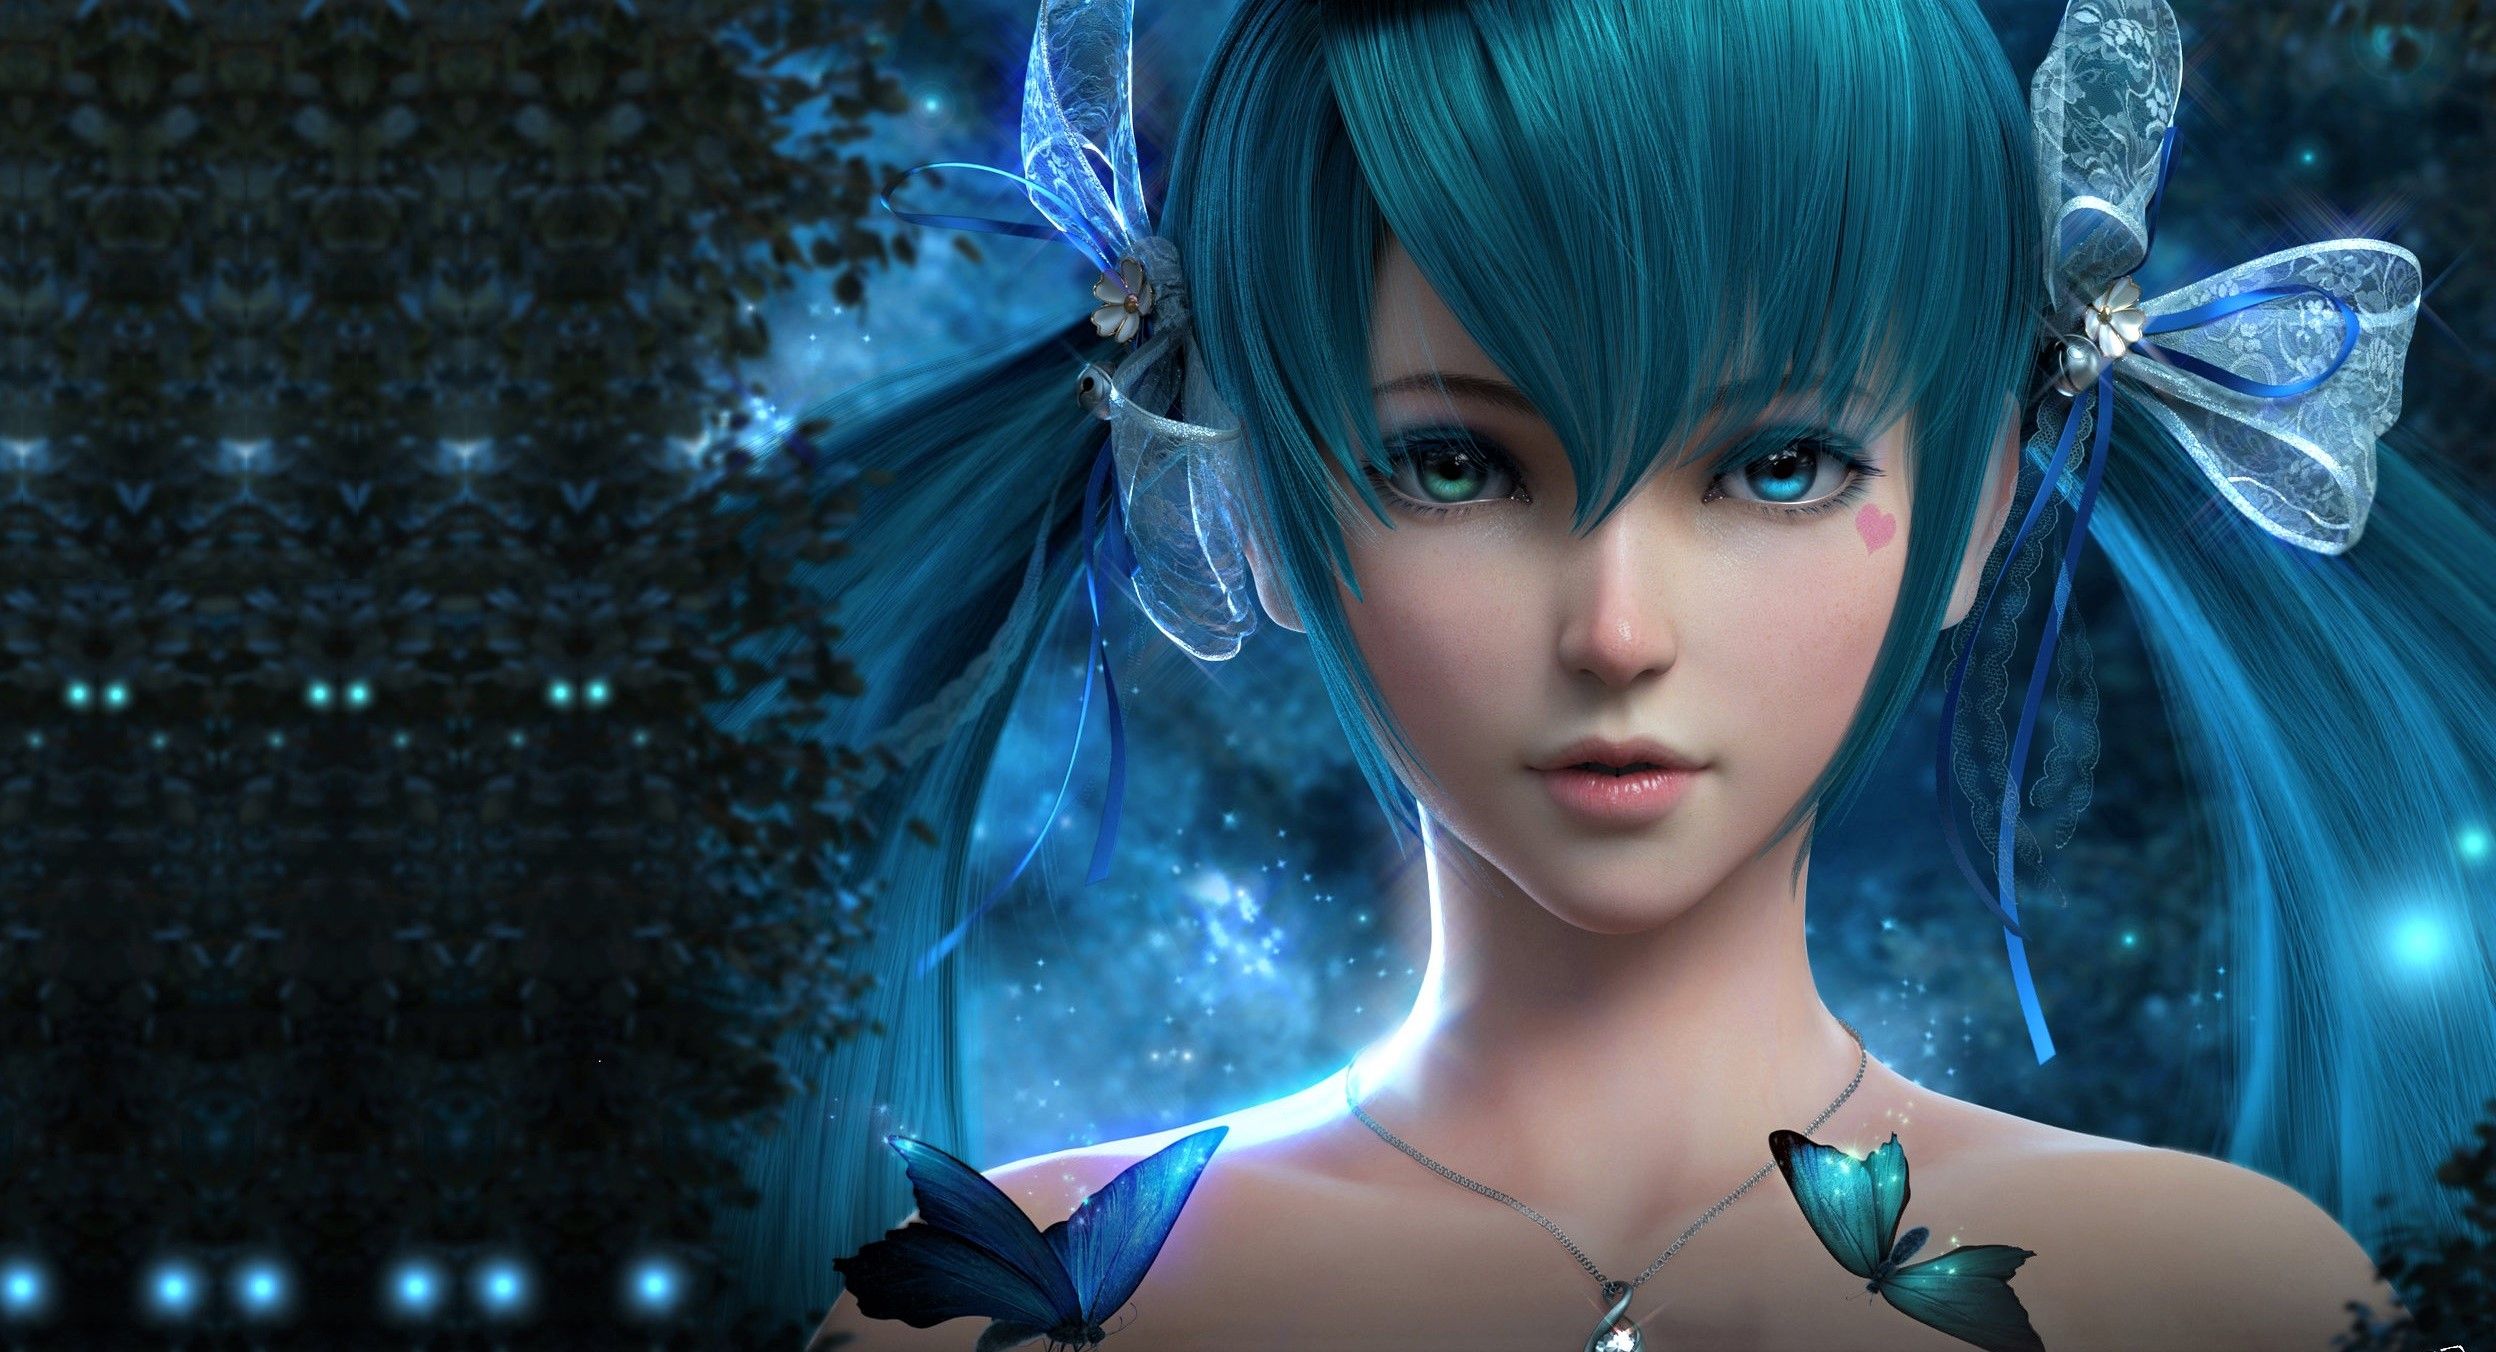 Blue Hair Anime Girl, HD Anime, 4k Wallpaper, Image, Background